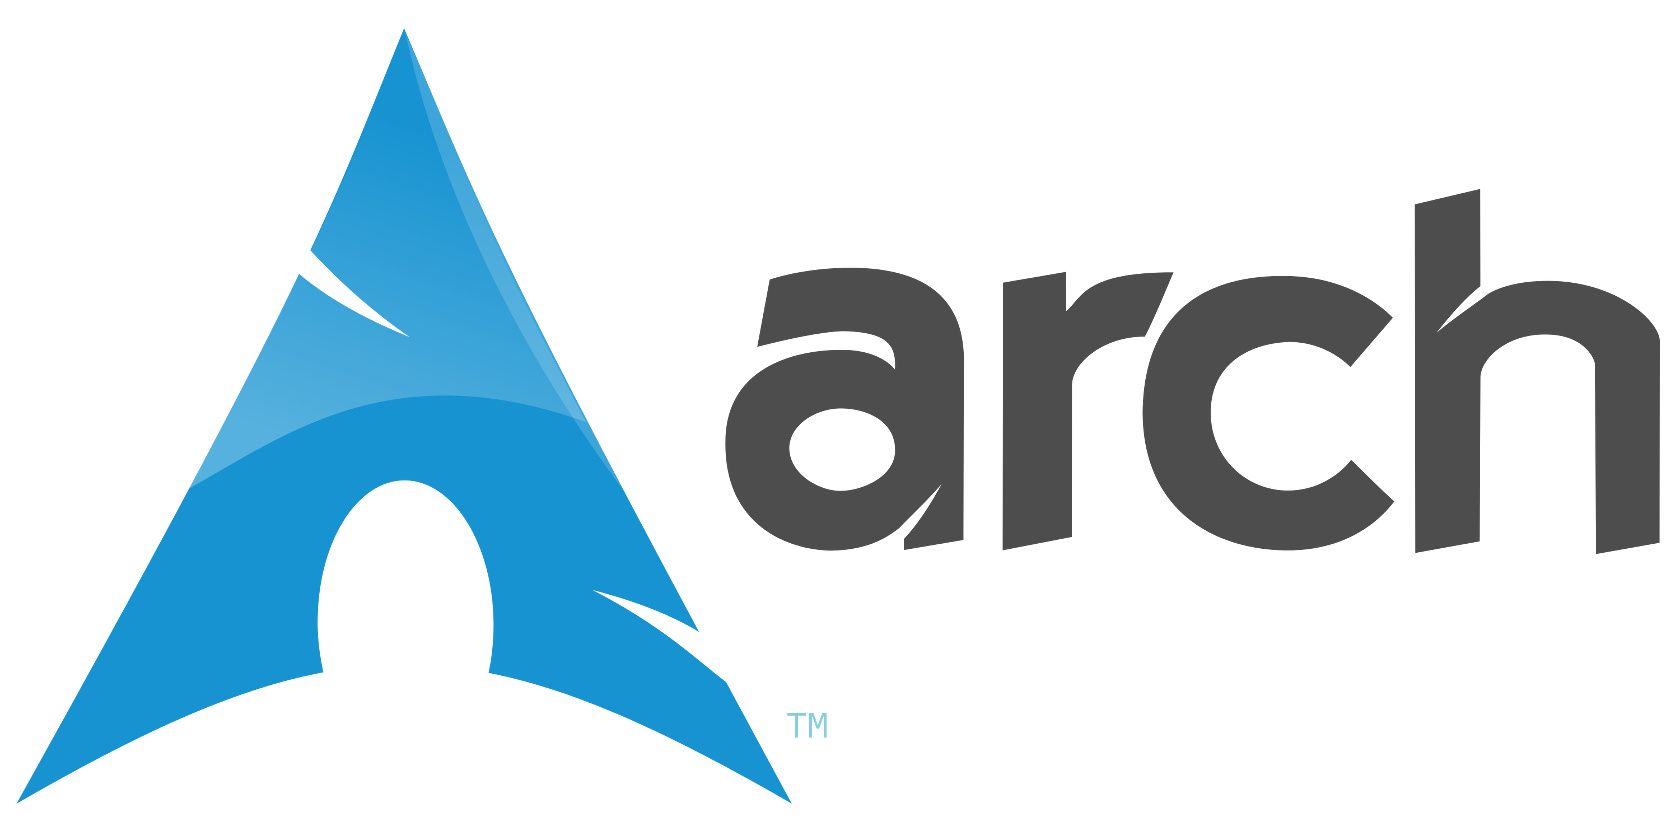 arch linux macbook air 2013